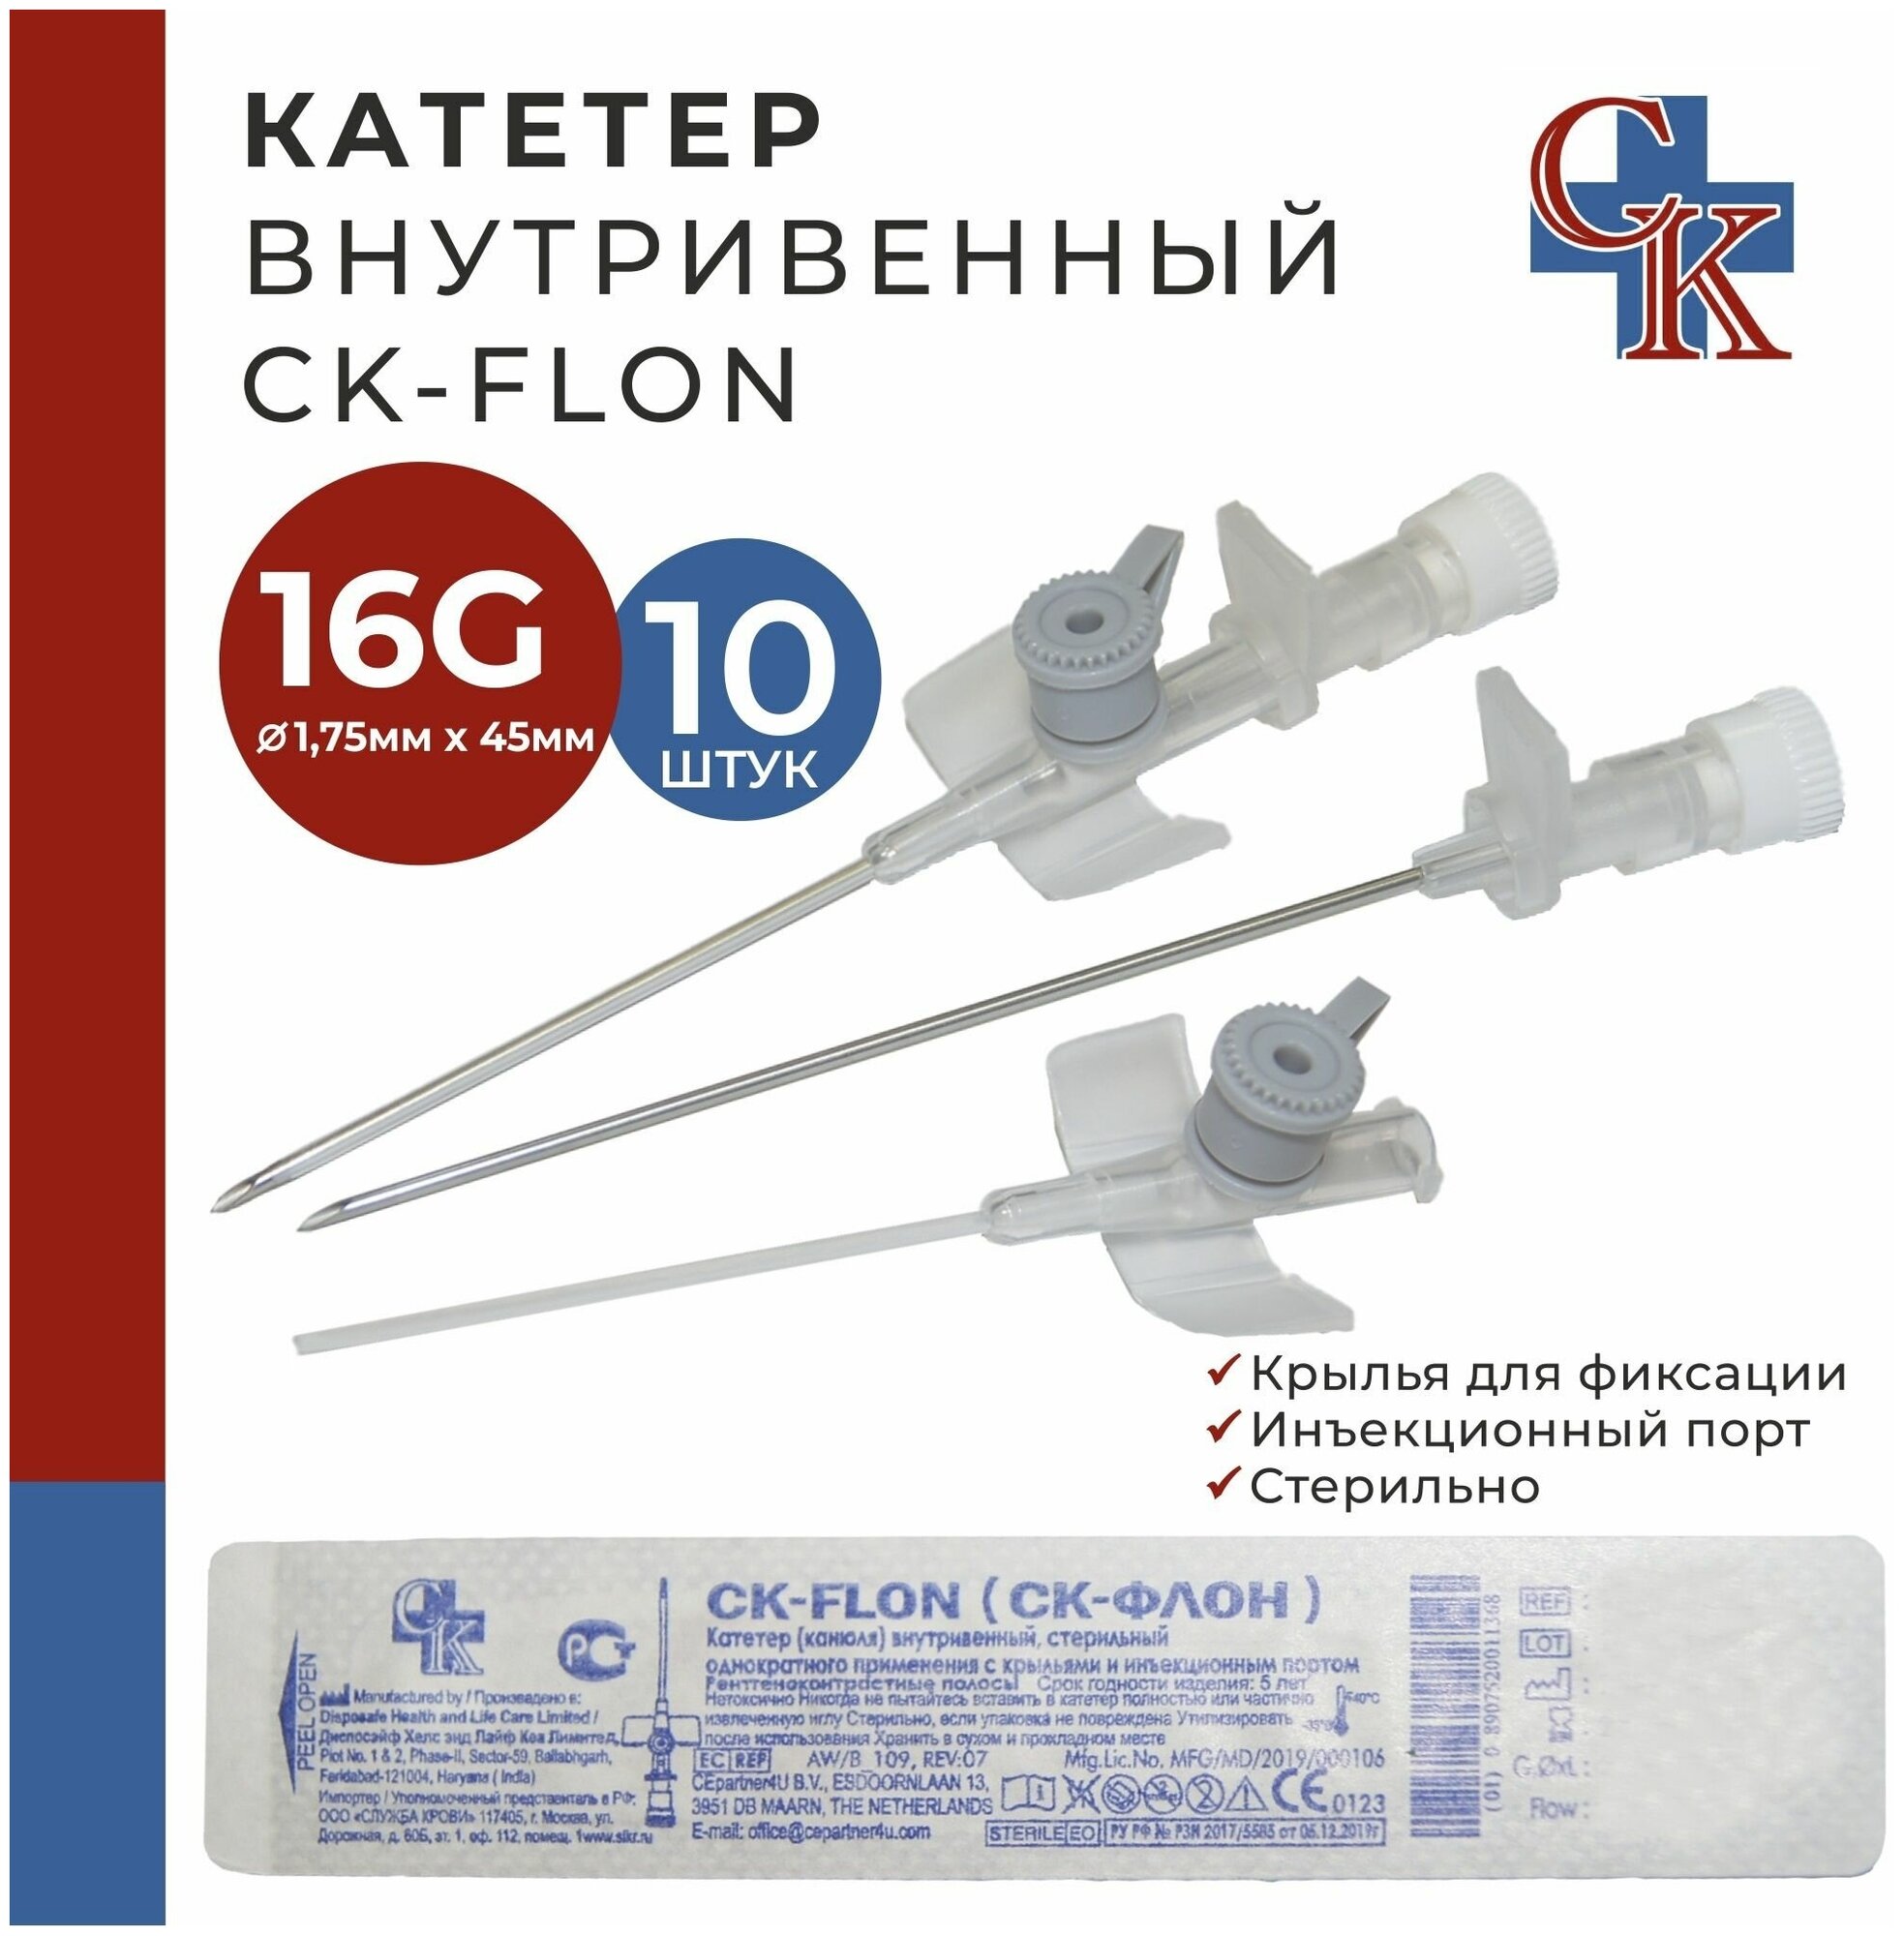 CK-FLON